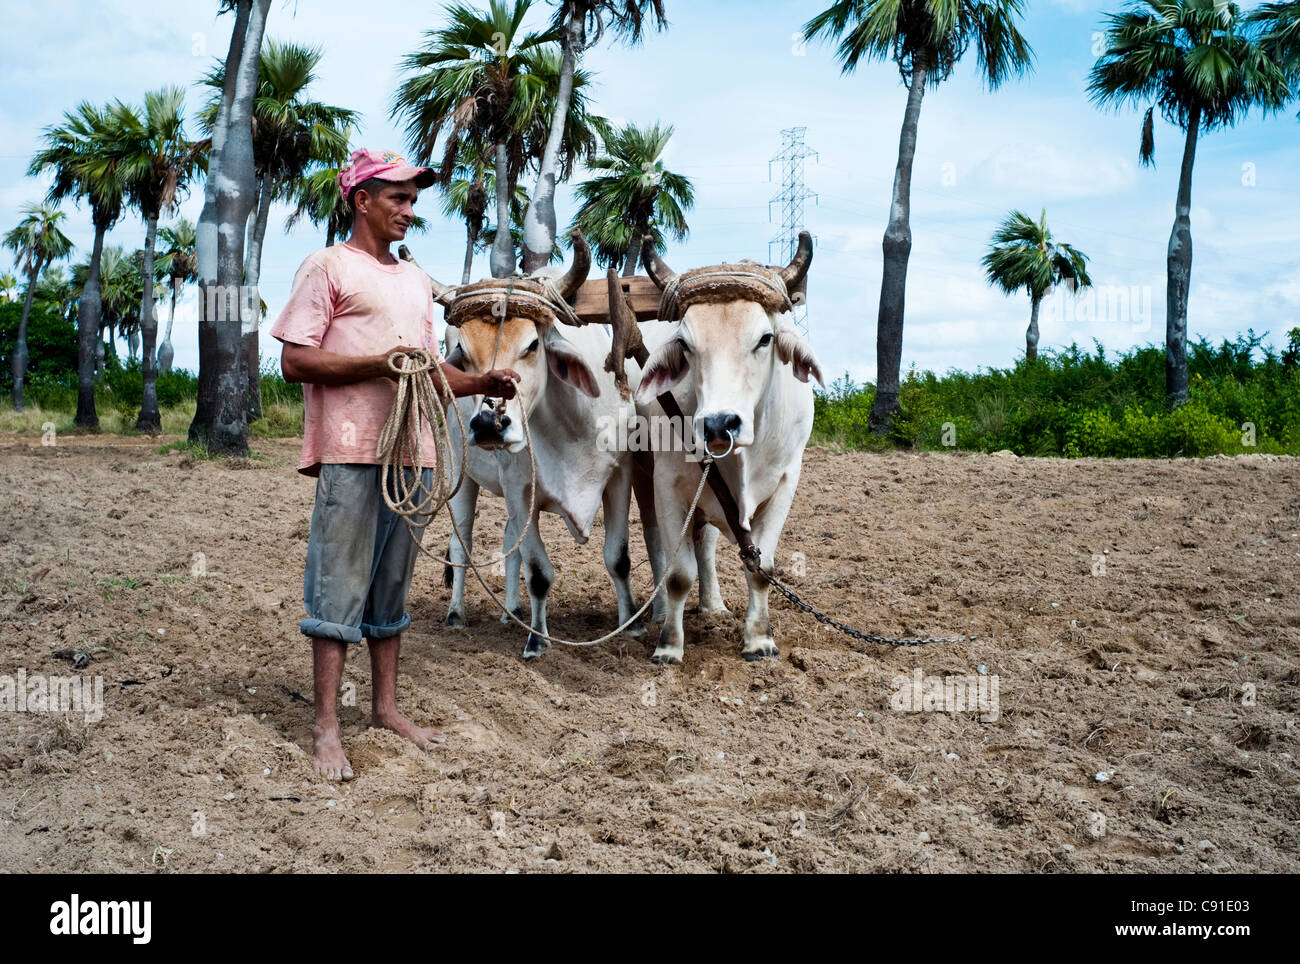 Le tabac et les exploitants de terres arables à Cuba utilisent souvent des charrues, bœufs et ces animaux de travail sont très prisés comme animaux de ferme. Banque D'Images